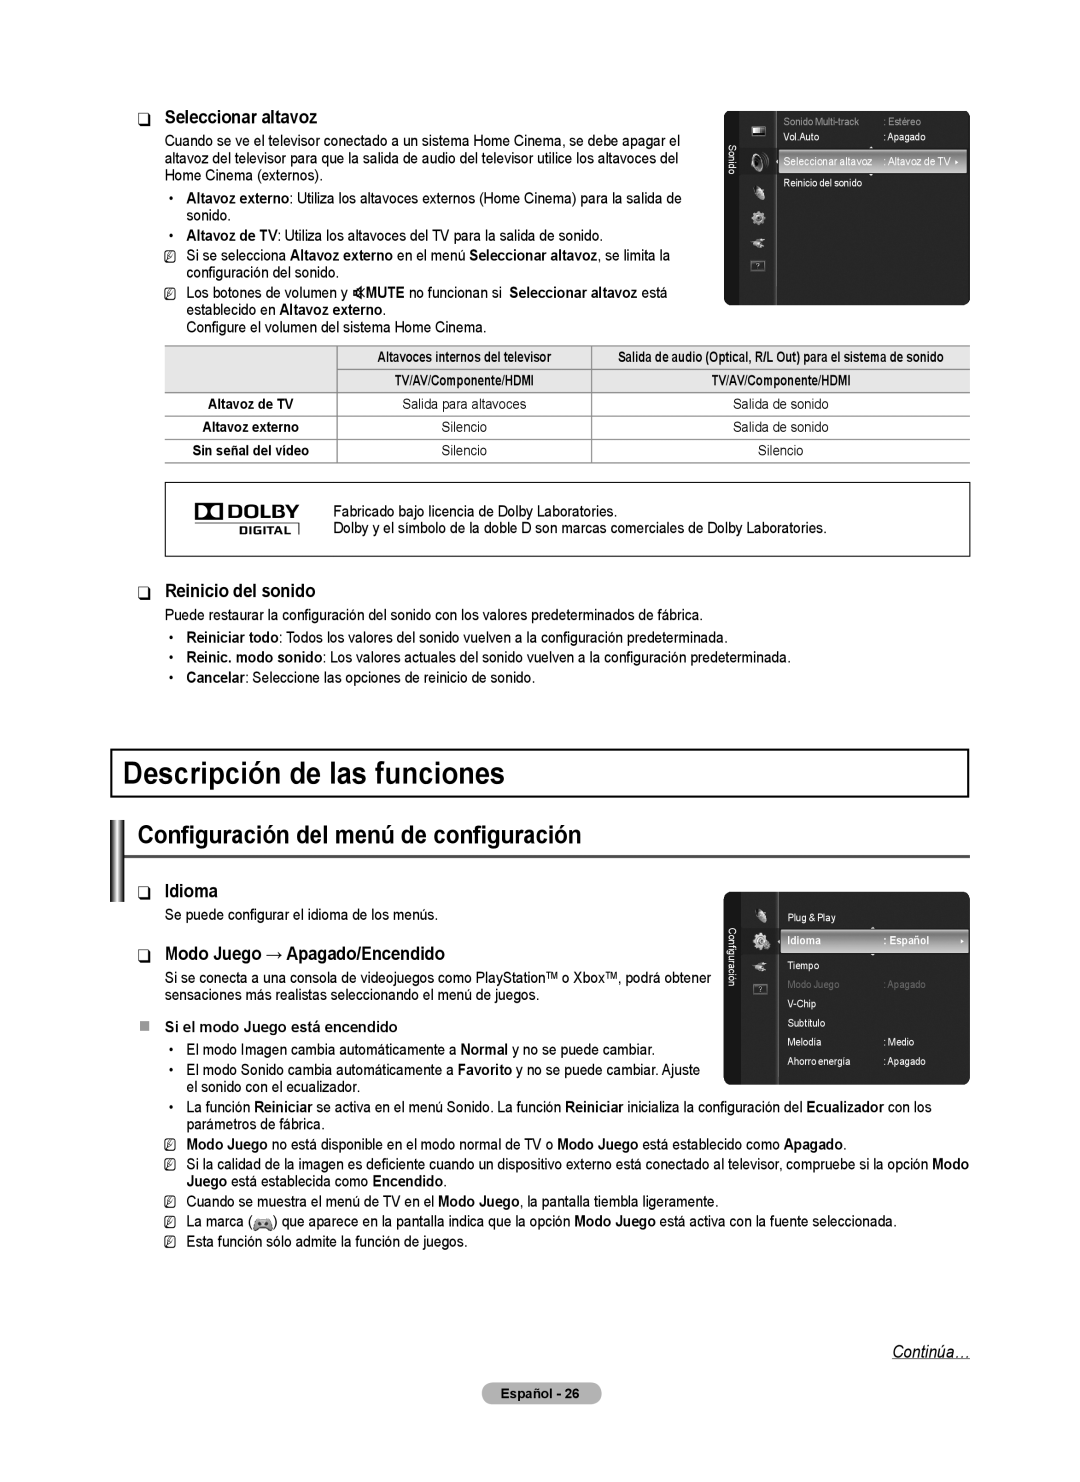 Samsung BN68-02426A-00 Descripción de las funciones, Seleccionar altavoz, Reinicio del sonido, Idioma, Continúa…, Modo 